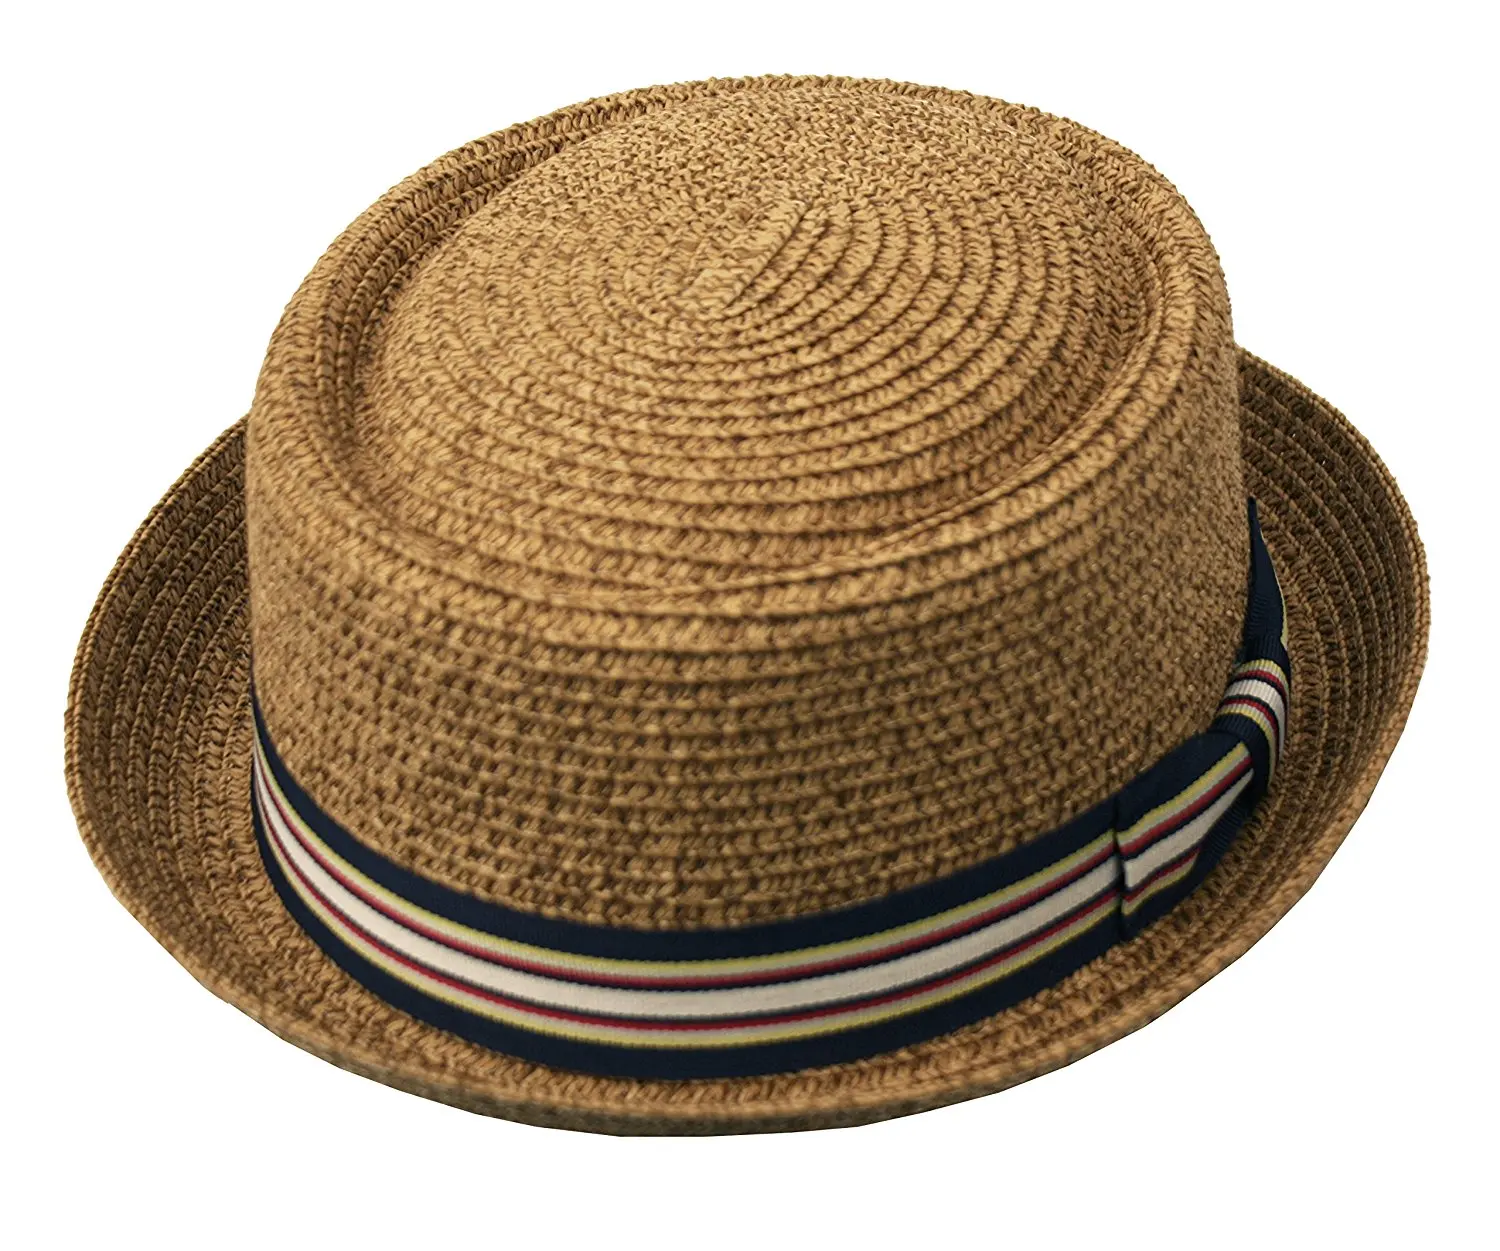 Шляпа мужская летняя порк Пай. Соломенная шляпа порк-Пай. Большая соломенная шляпа японская. Шляпа Федора соломенная с цепочкой. Шляпы оптом